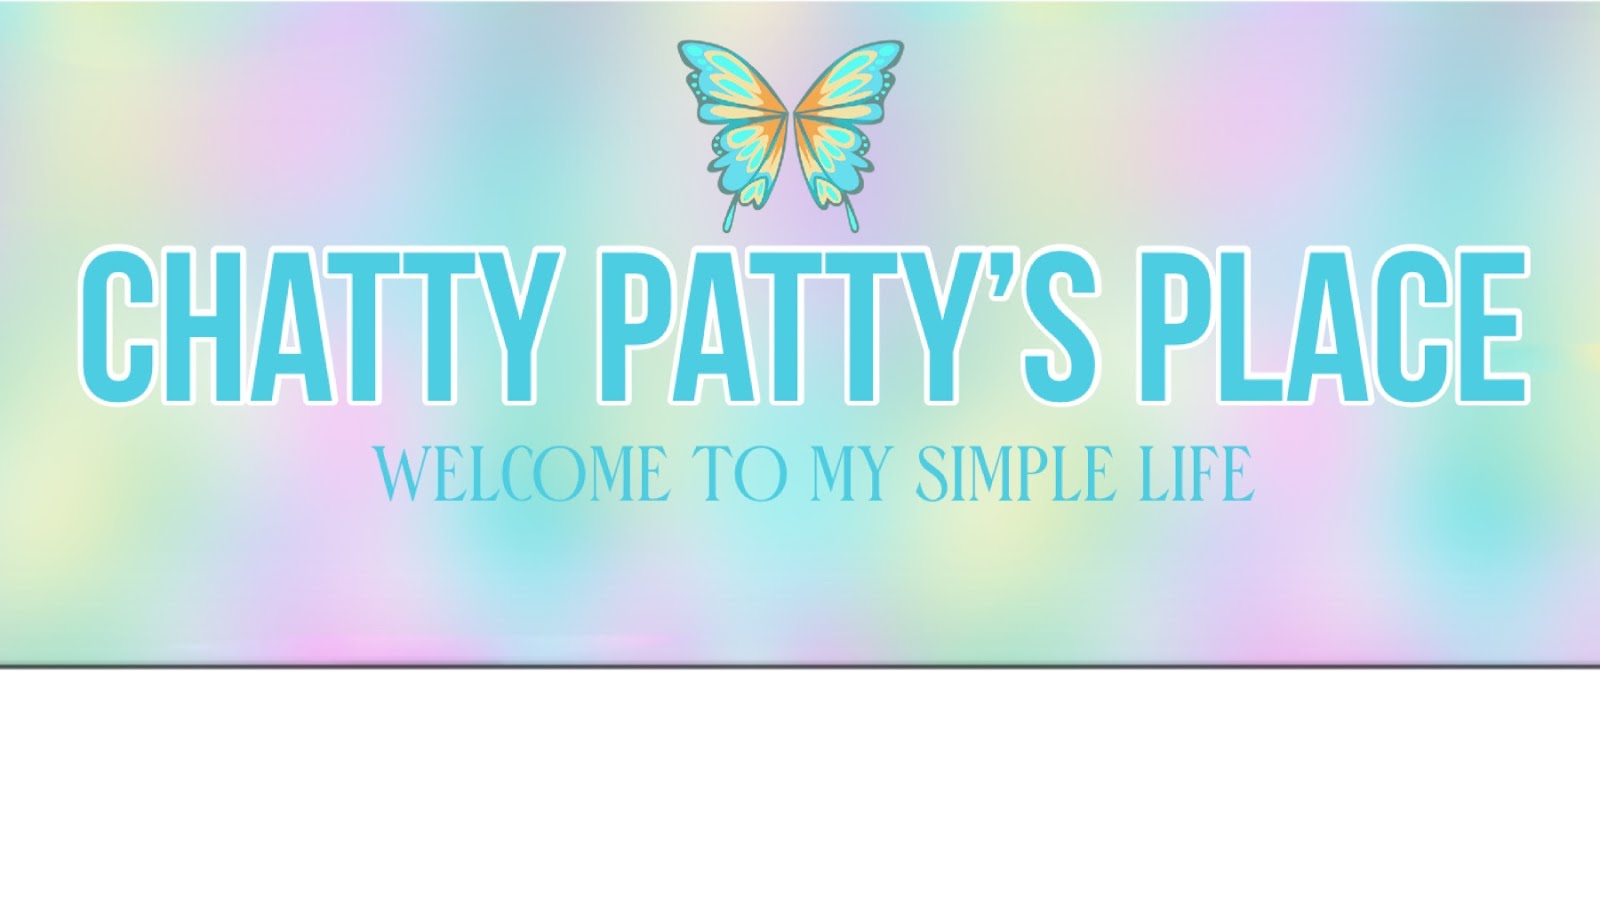 Chatty Patty's Place